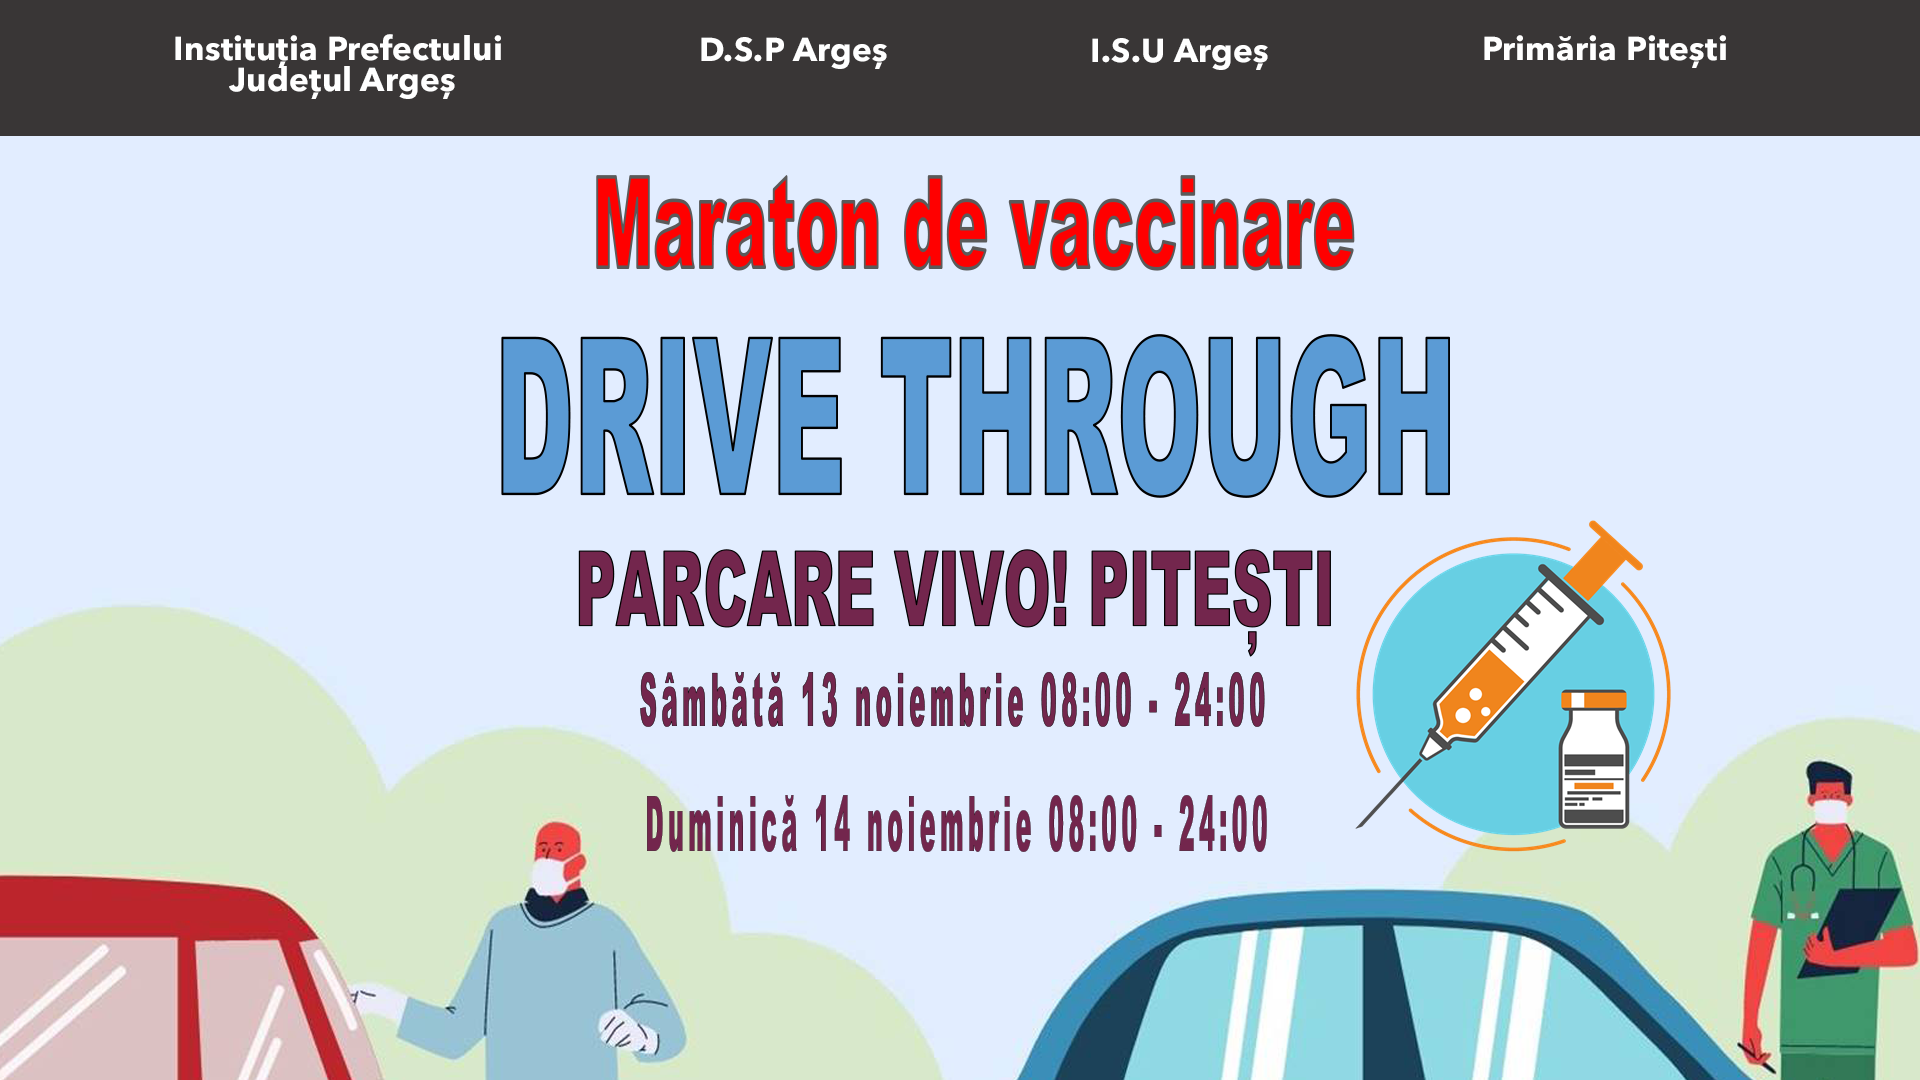 VIVO!_PT_maraton_vaccinare_Banner_1920x1080.png